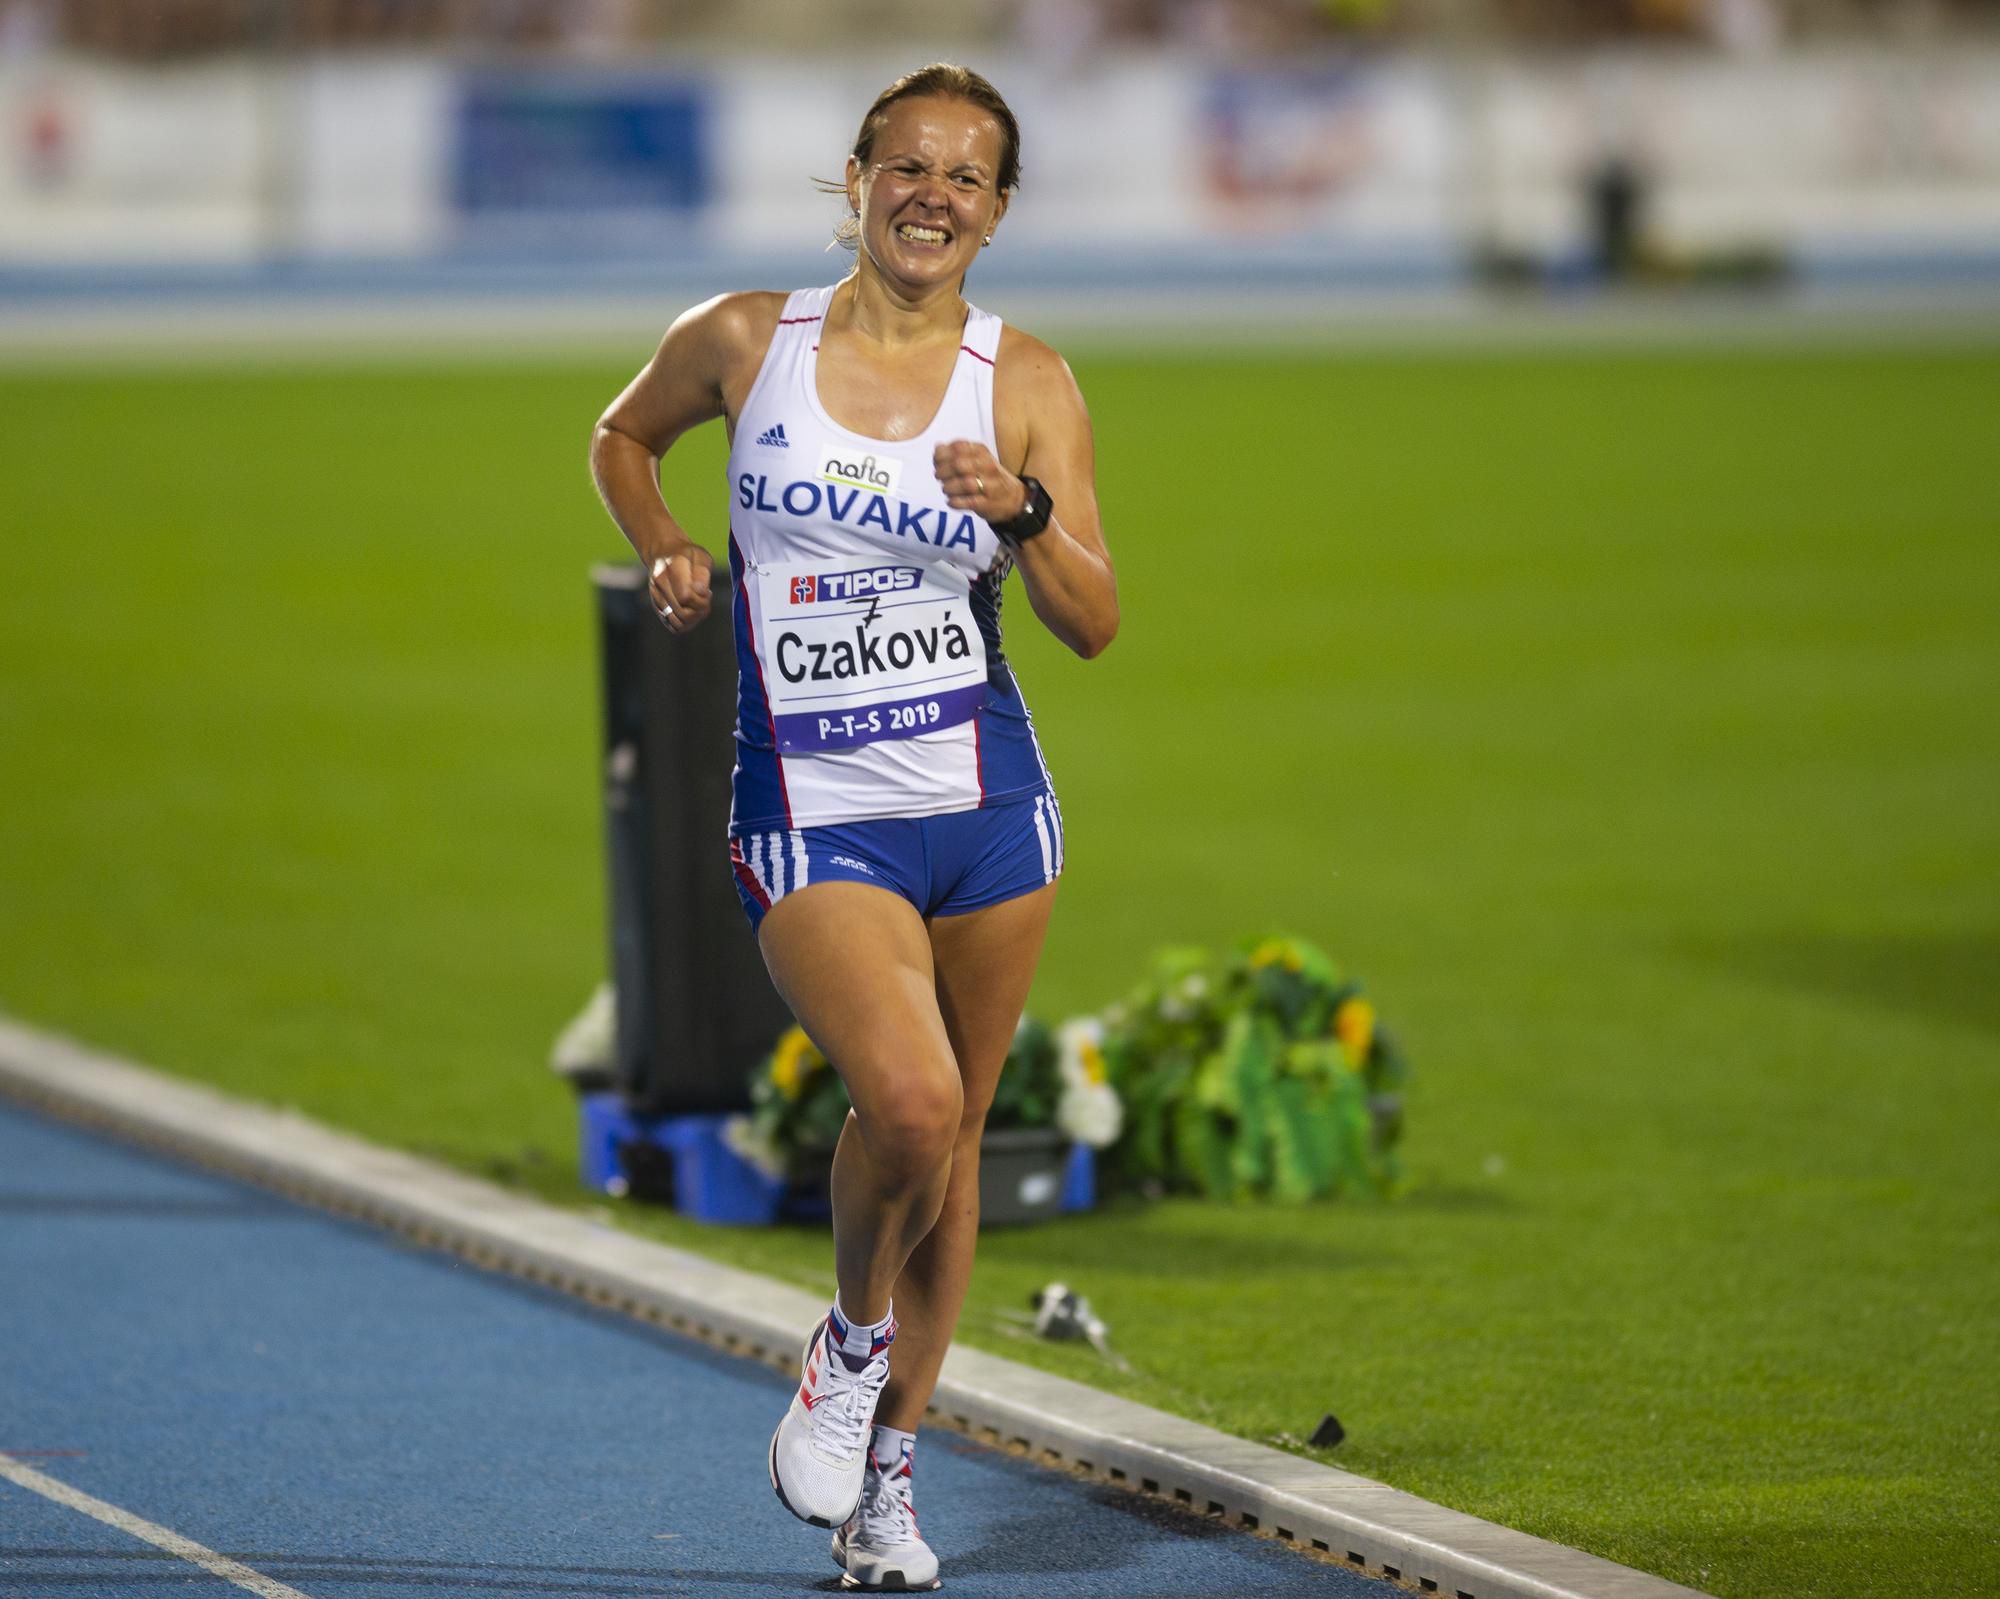 Slovenská reprezentantka Mária Czaková počas súťaže žien v chôdzi.